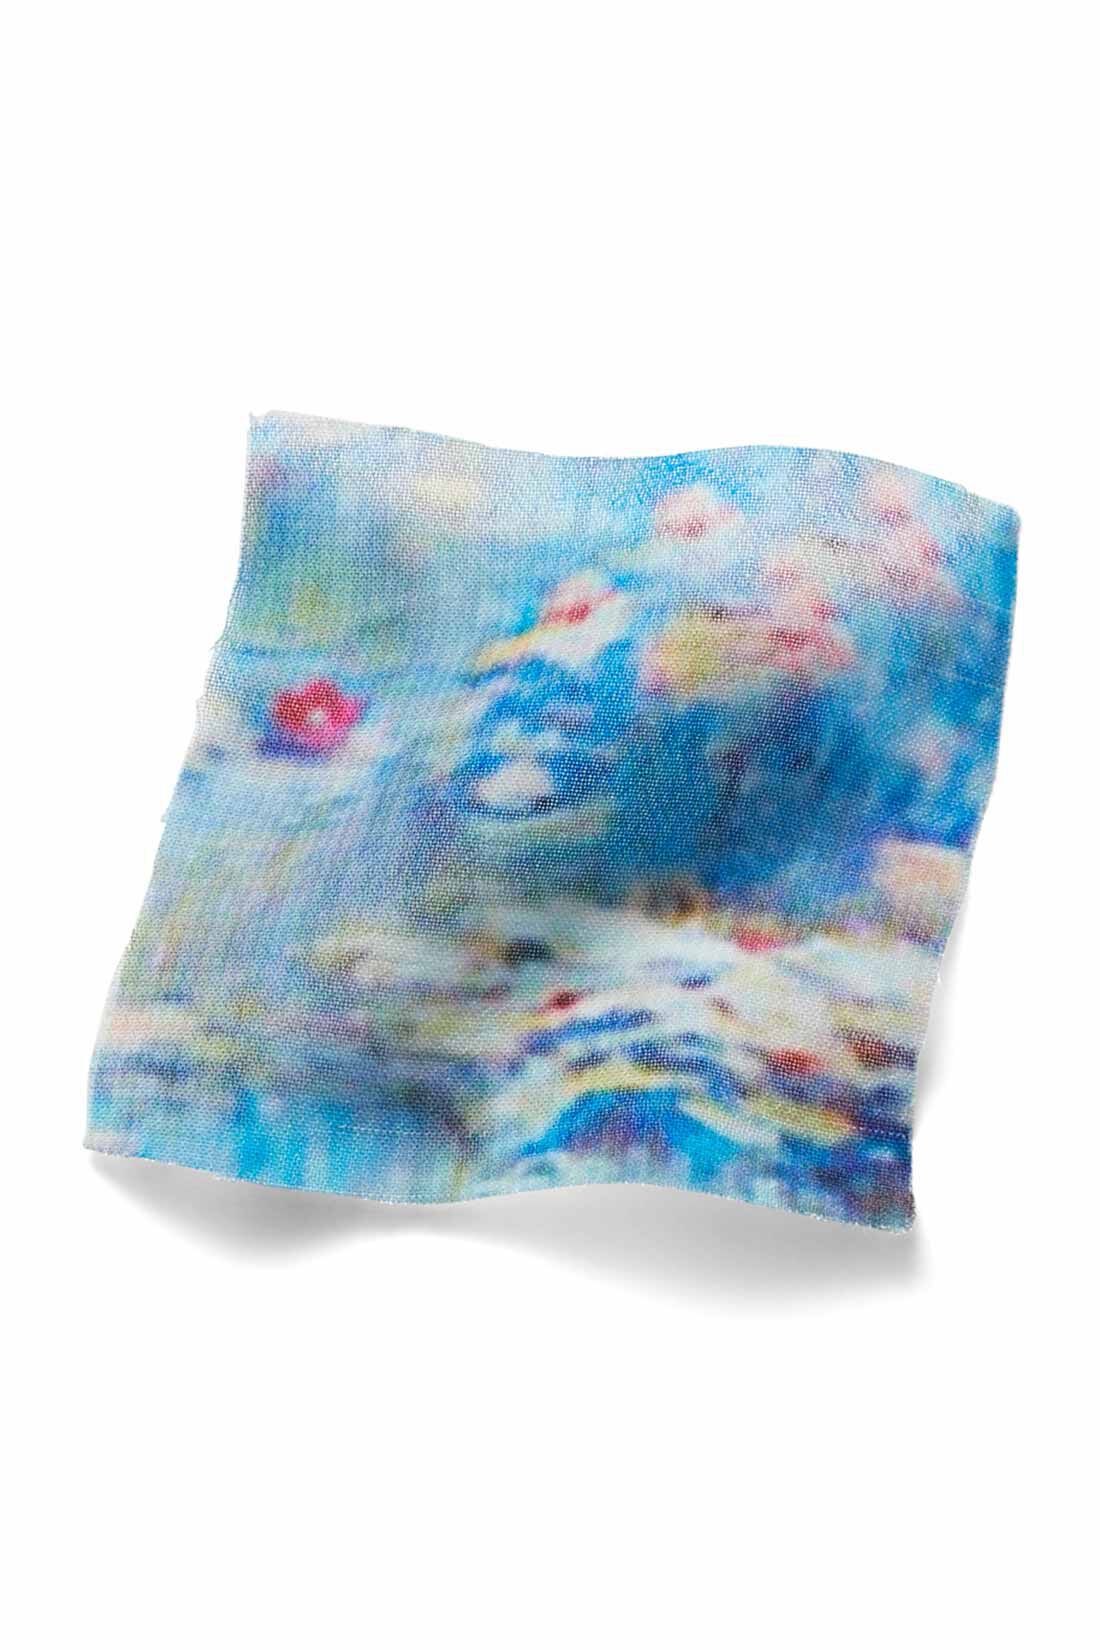 イディット|IEDIT[イディット]　モネの睡蓮をまとうシフォンスカート〈ブルー〉|原画をもとにパターンを起こし、水面を思わせる、透け感のあるシフォン素材にプリント。